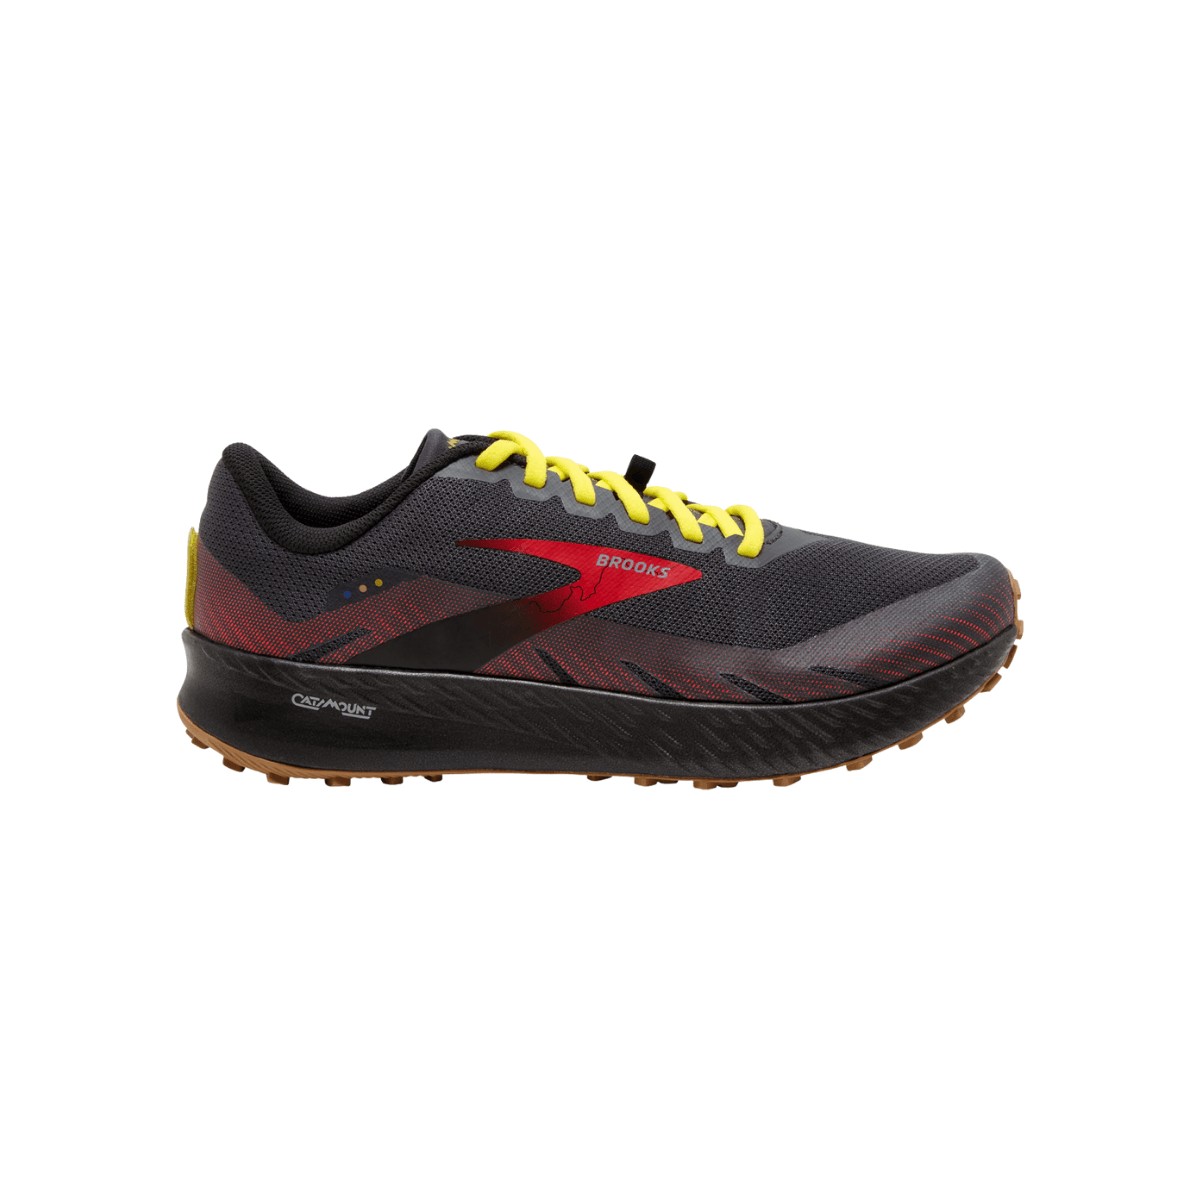 Brooks Catamount Schuhe Schwarz Rot Gelb SS22, Größe 41 - EUR